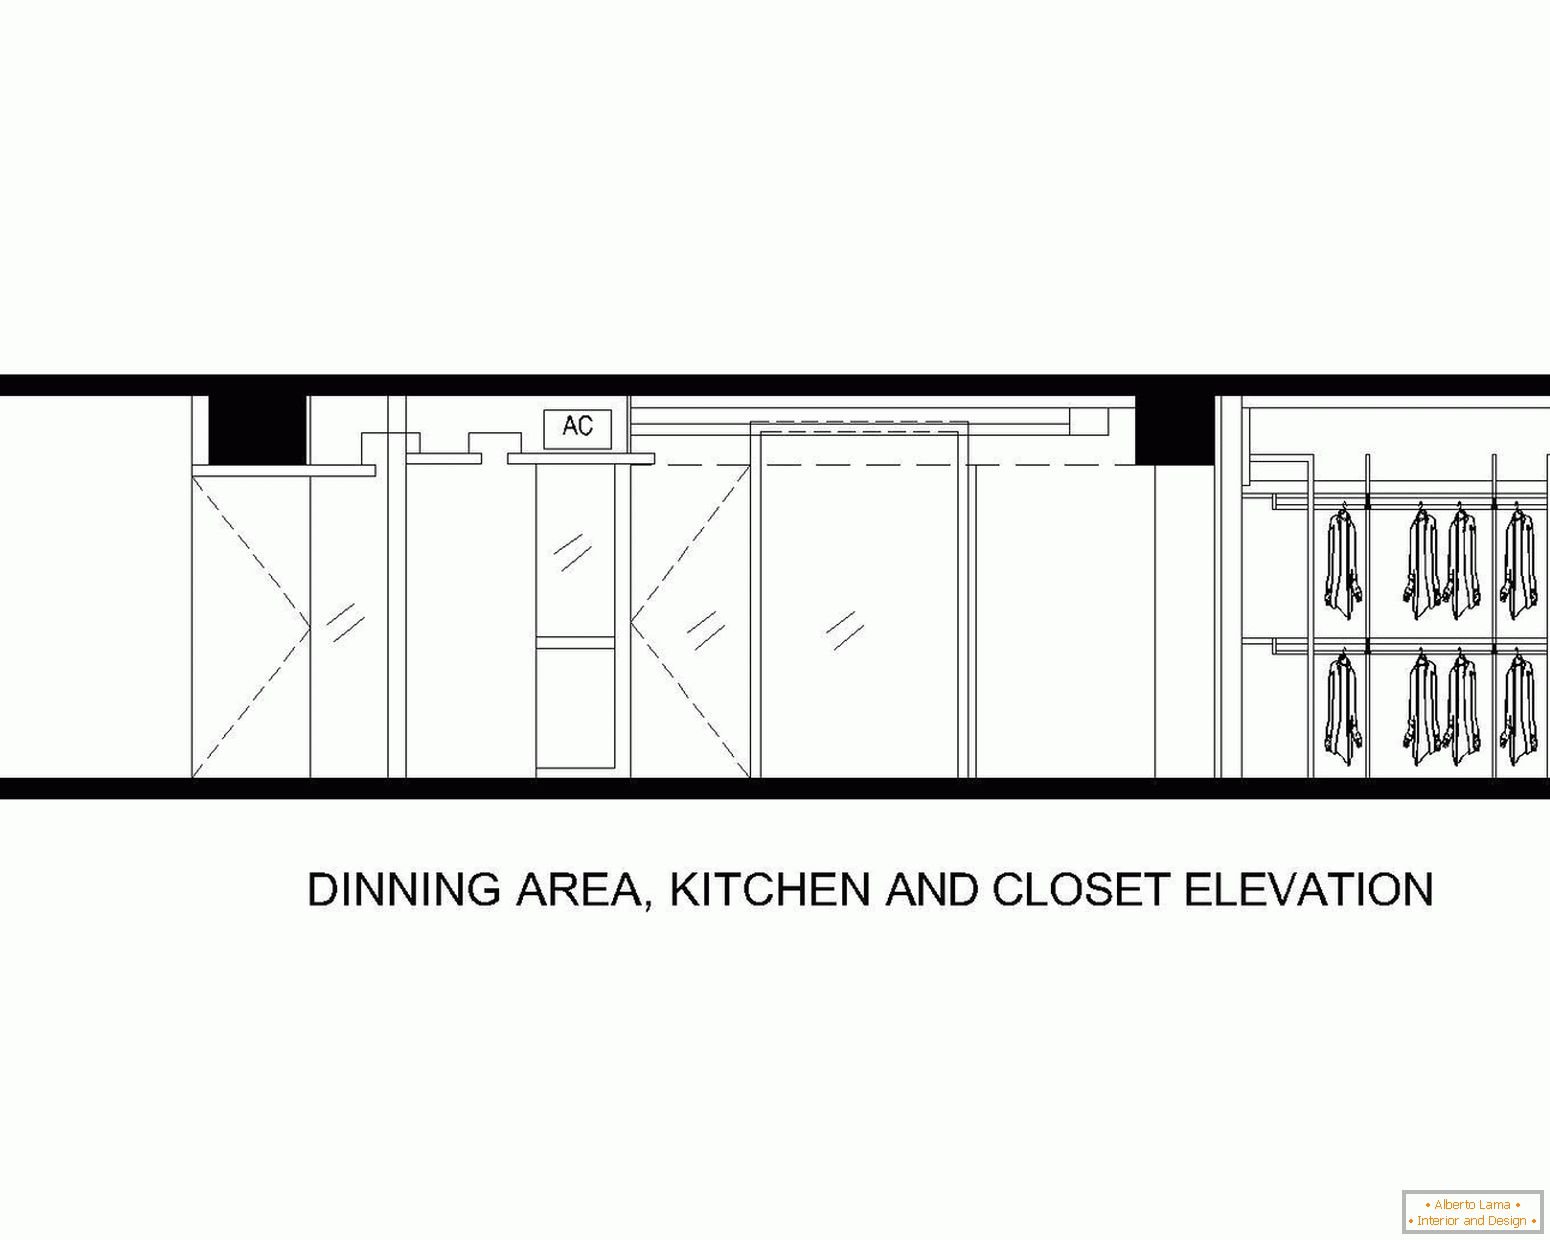 Az étkező, konyha és fürdőszoba elhelyezése